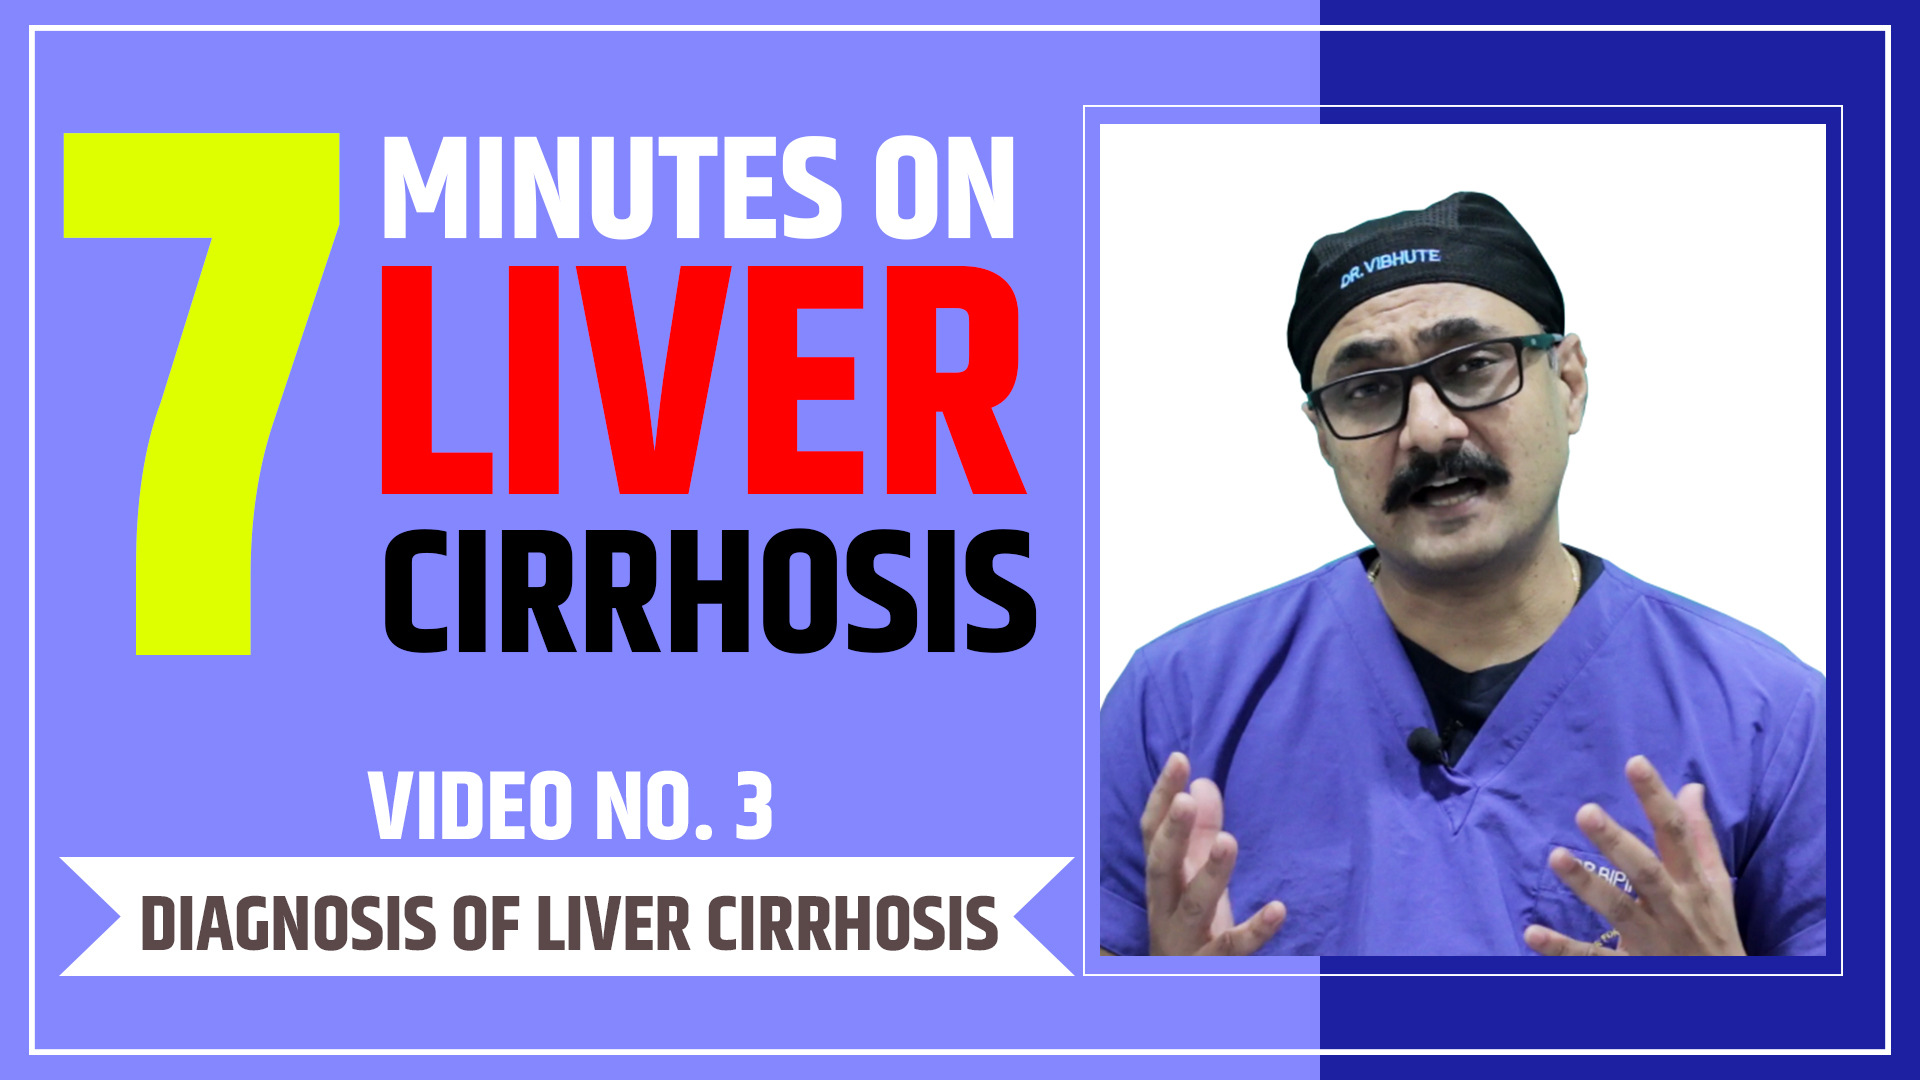 How to Diagnosis of Liver Cirrhosis